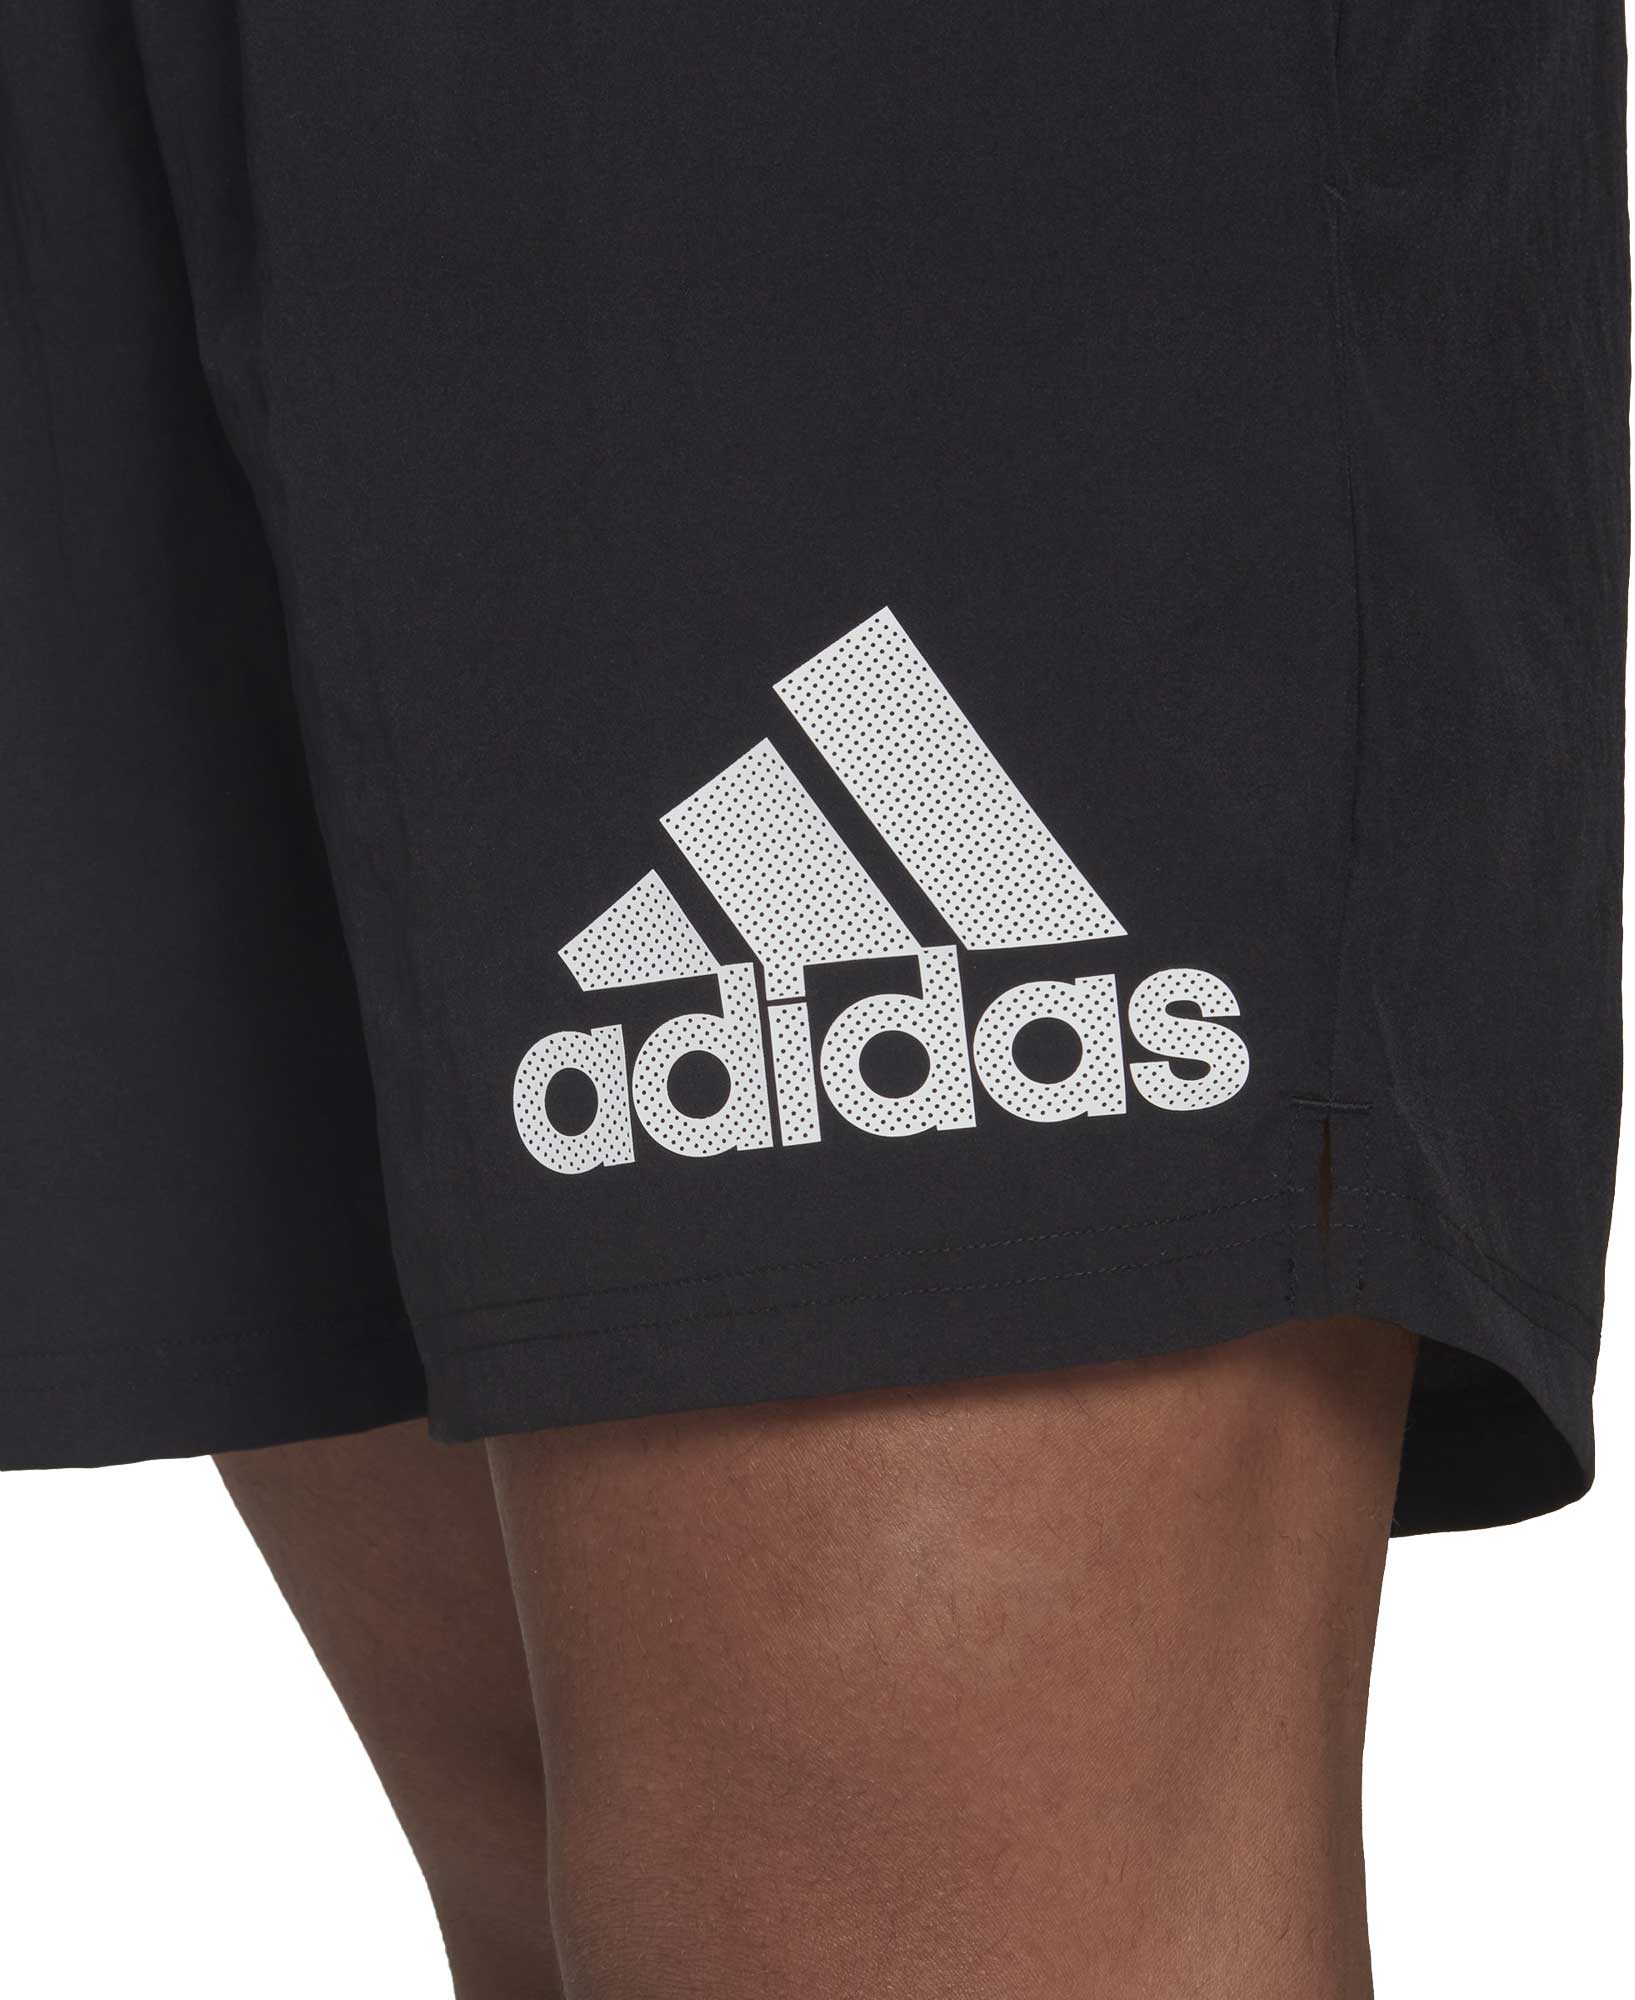 Men's running shorts